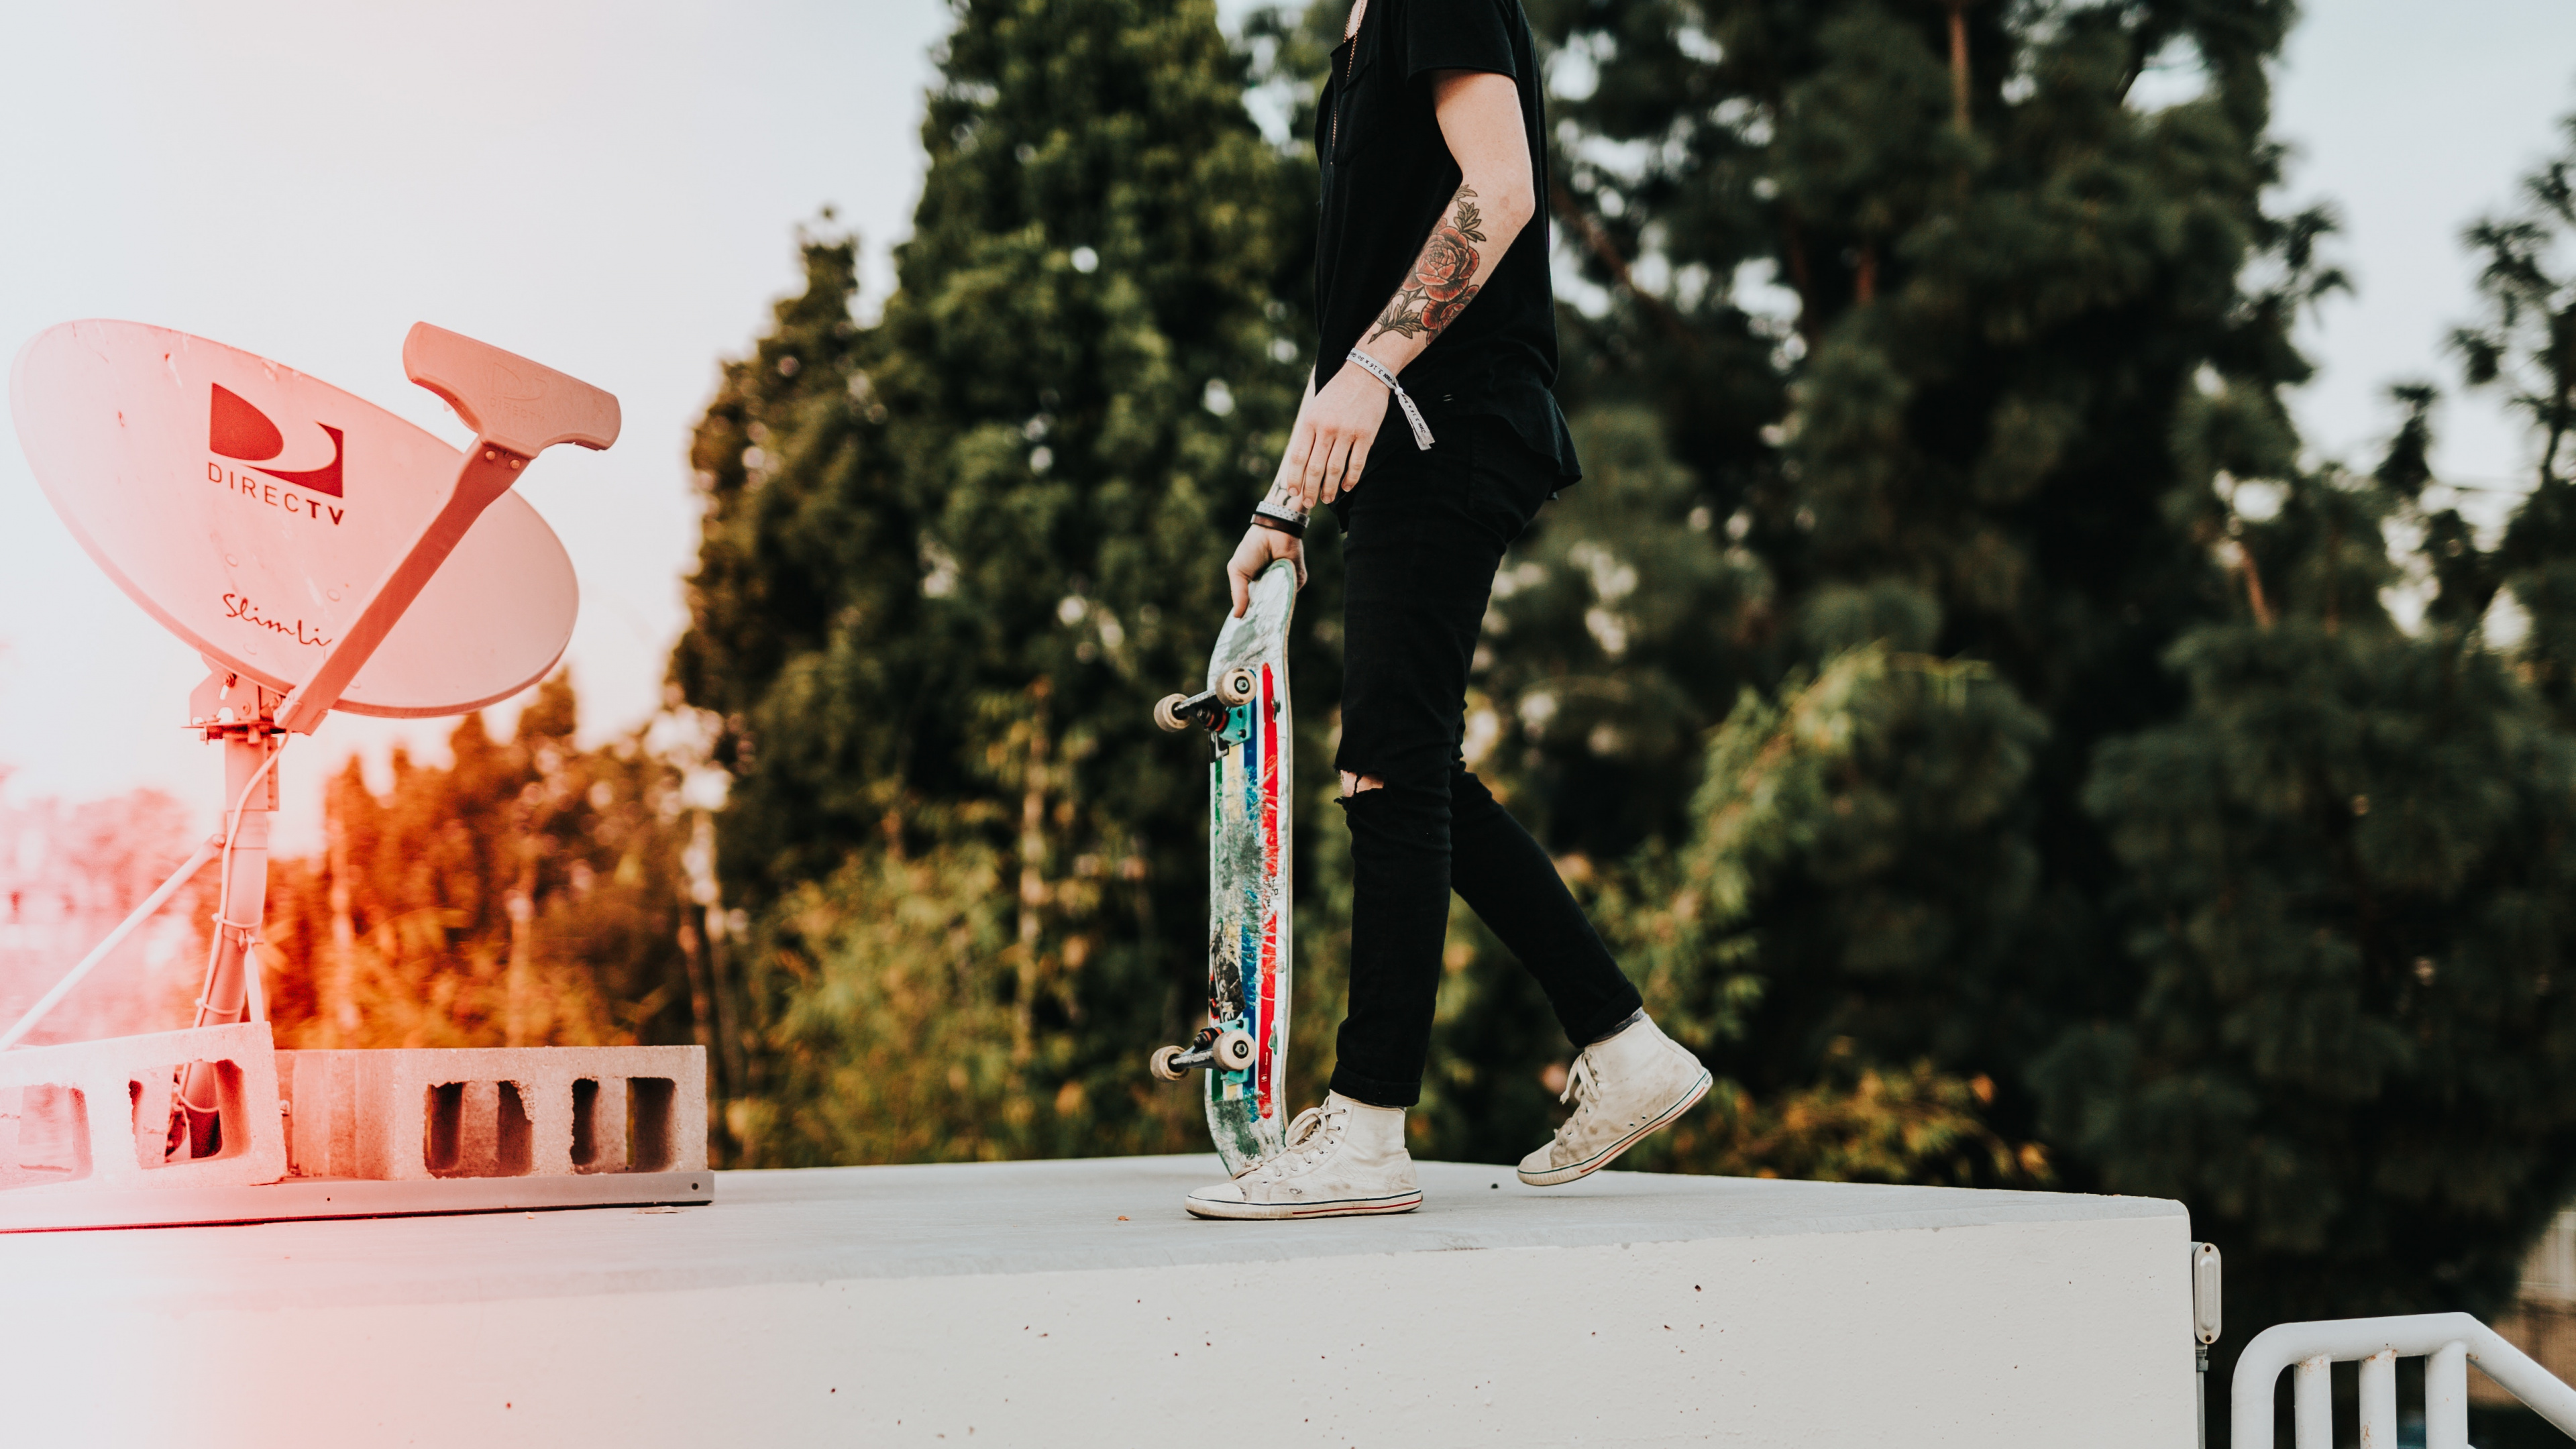 Mann in Schwarzer Hose Und Schwarzer Jacke, Der Skateboard Fährt. Wallpaper in 3840x2160 Resolution